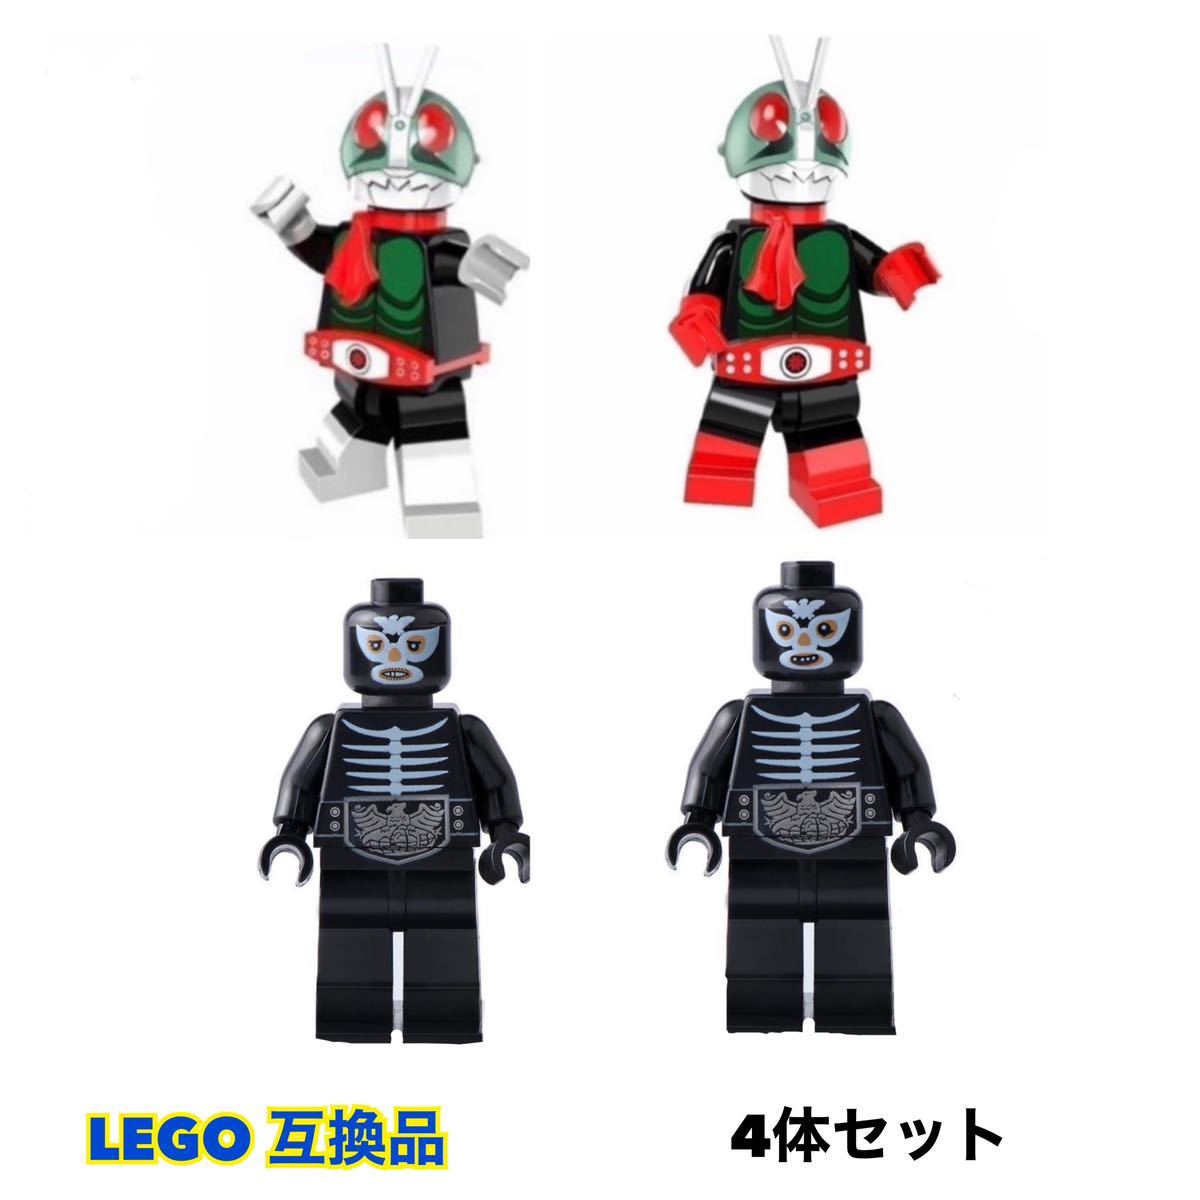 仮面ライダー レゴミニフィグ 【4体セット】 レゴ互換品 LEGO レゴ レゴセット【送料無料】の画像1